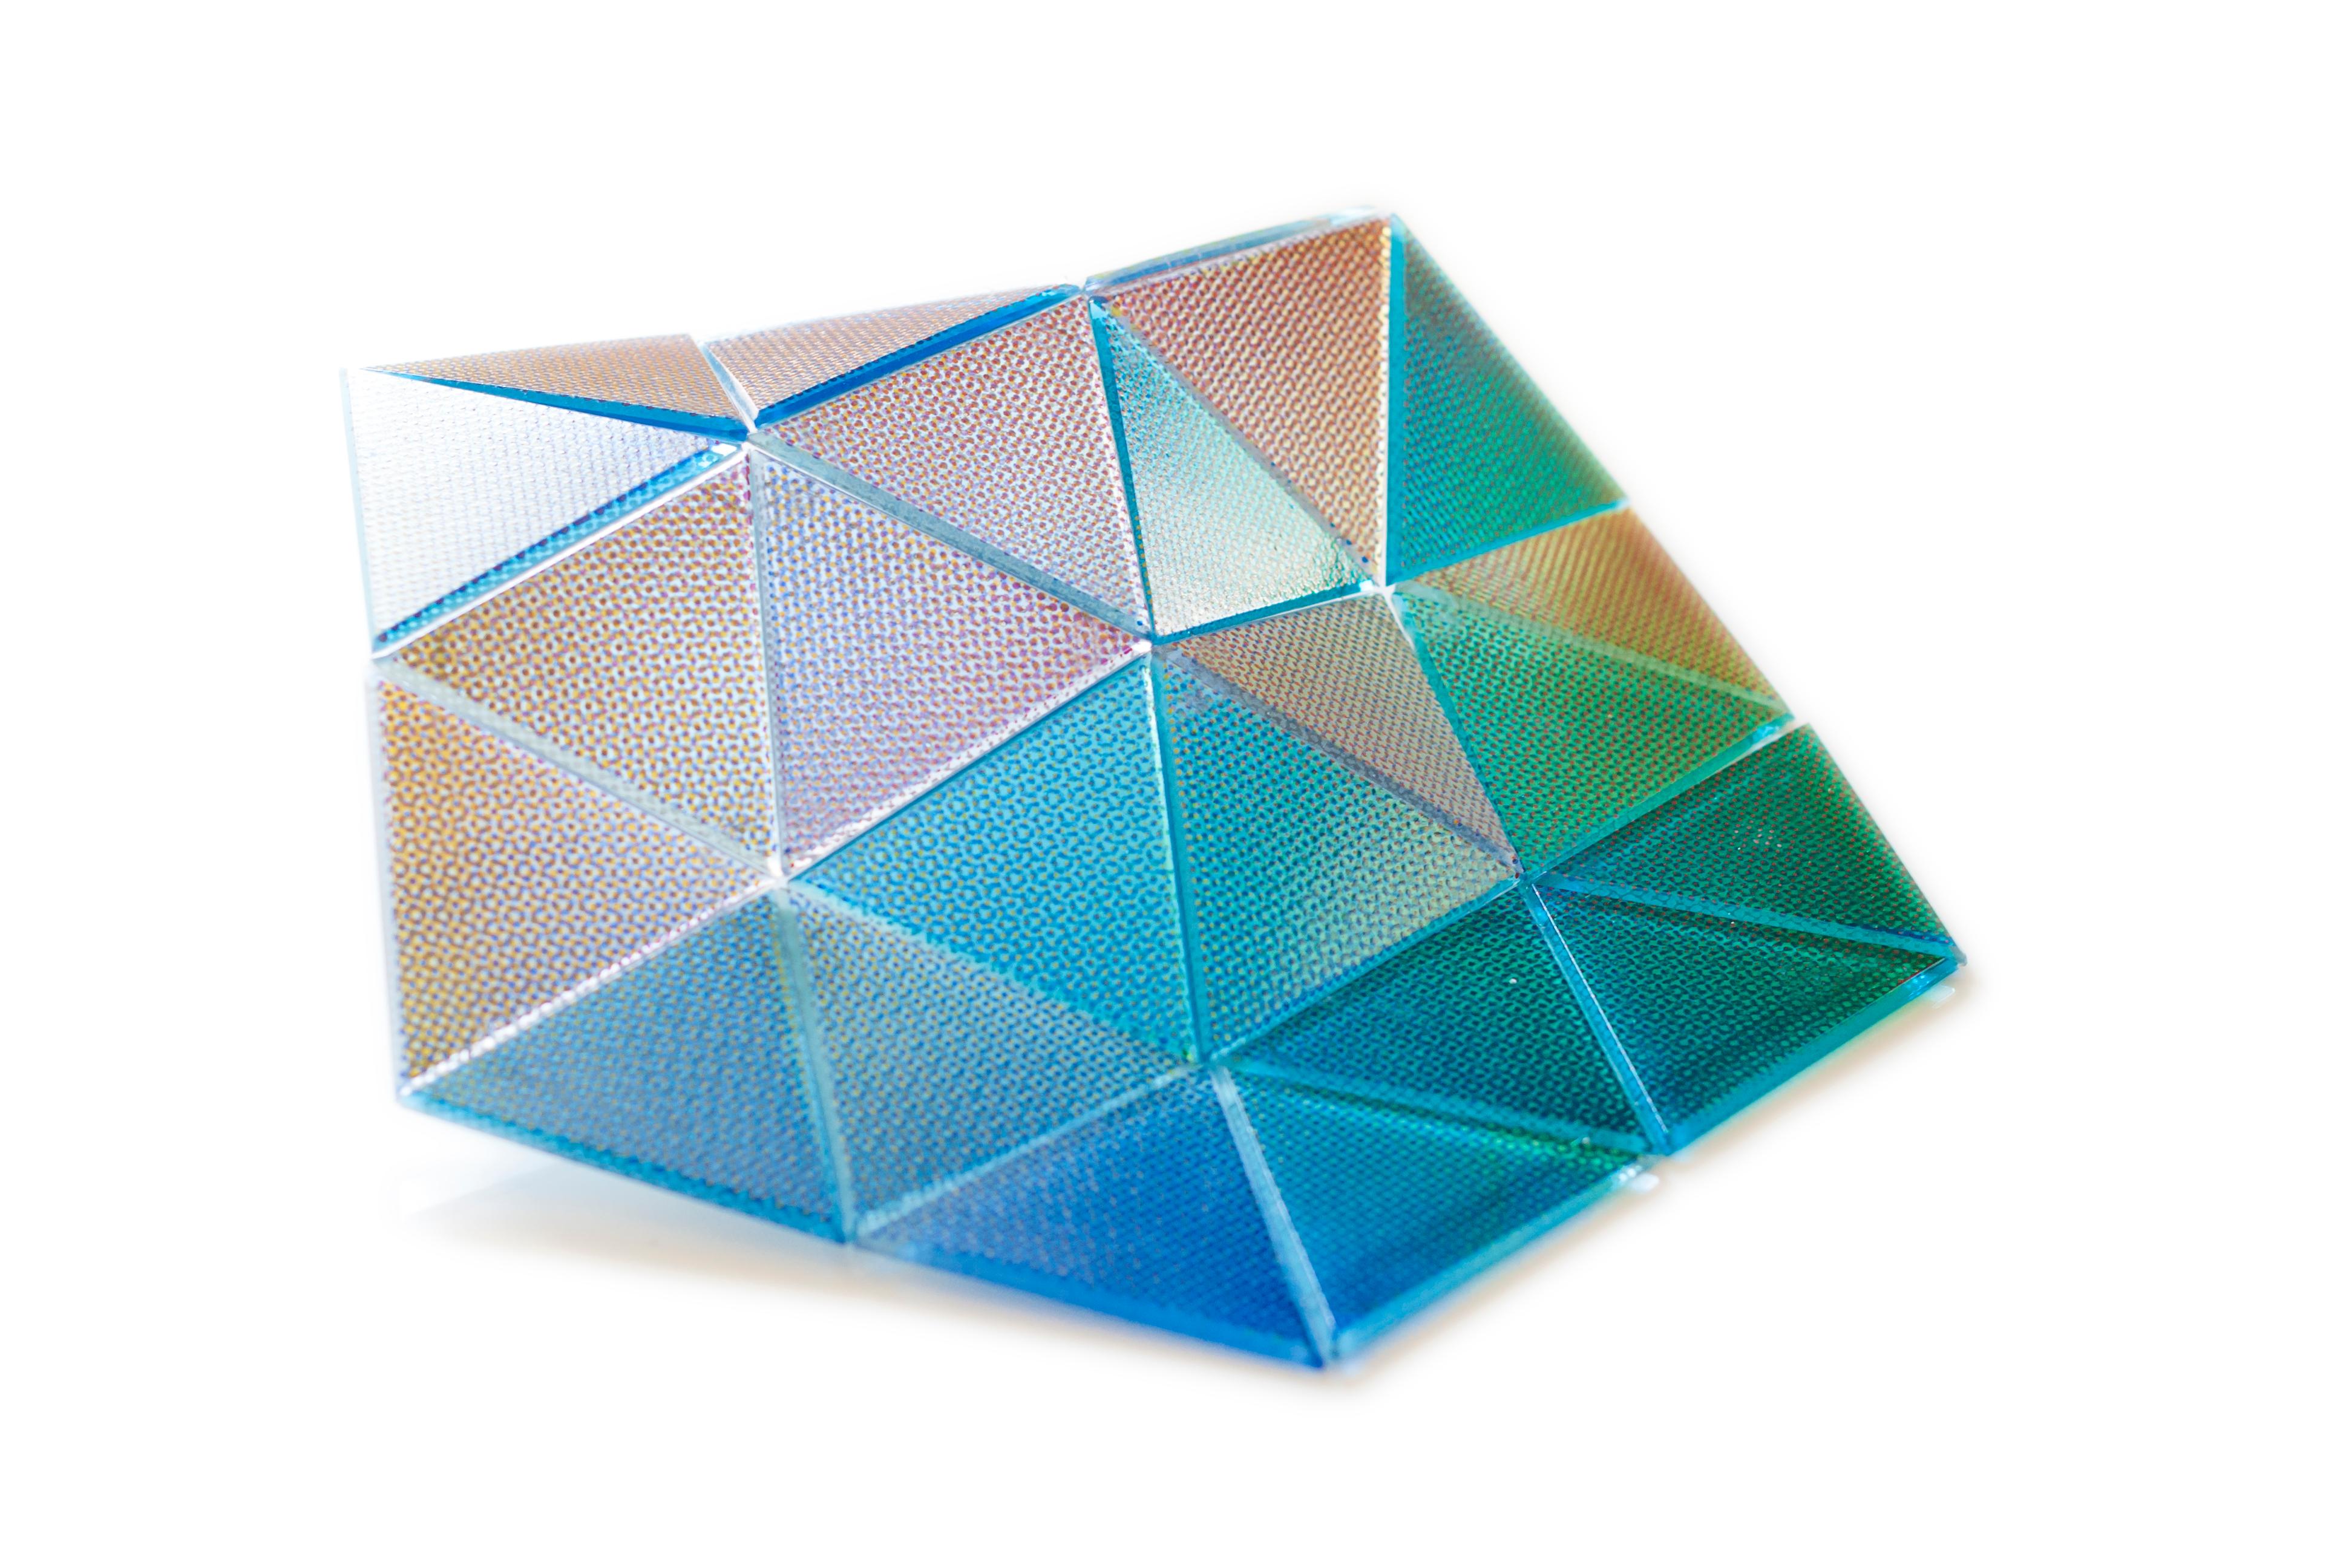 Nizioleti verre de Murano fait à la main par Matteo Silverio, 2019.
Dimensions : 360 x 320 mm / 12 triangles
MATERIAL : Verre de Murano

Tous les objets sont 100% faits à la main et personnalisables (couleurs, motifs, taille).
La composition peut